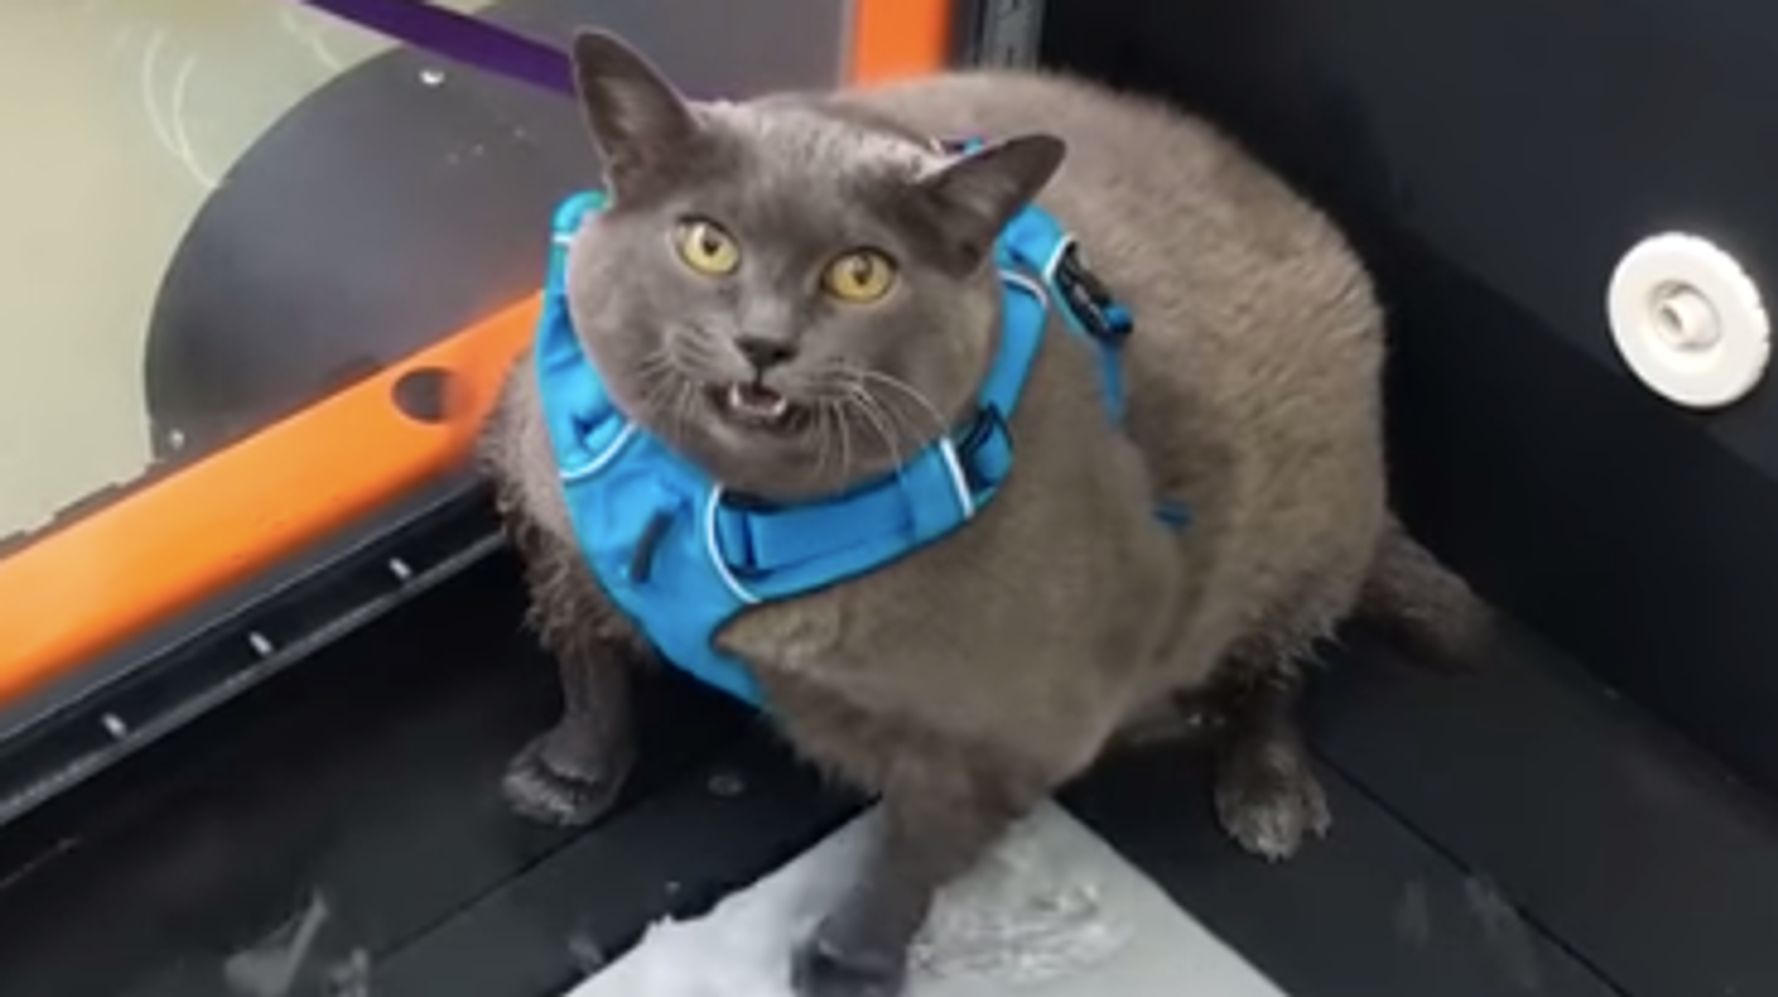 Grumpy-looking cat goes viral, cheers millions